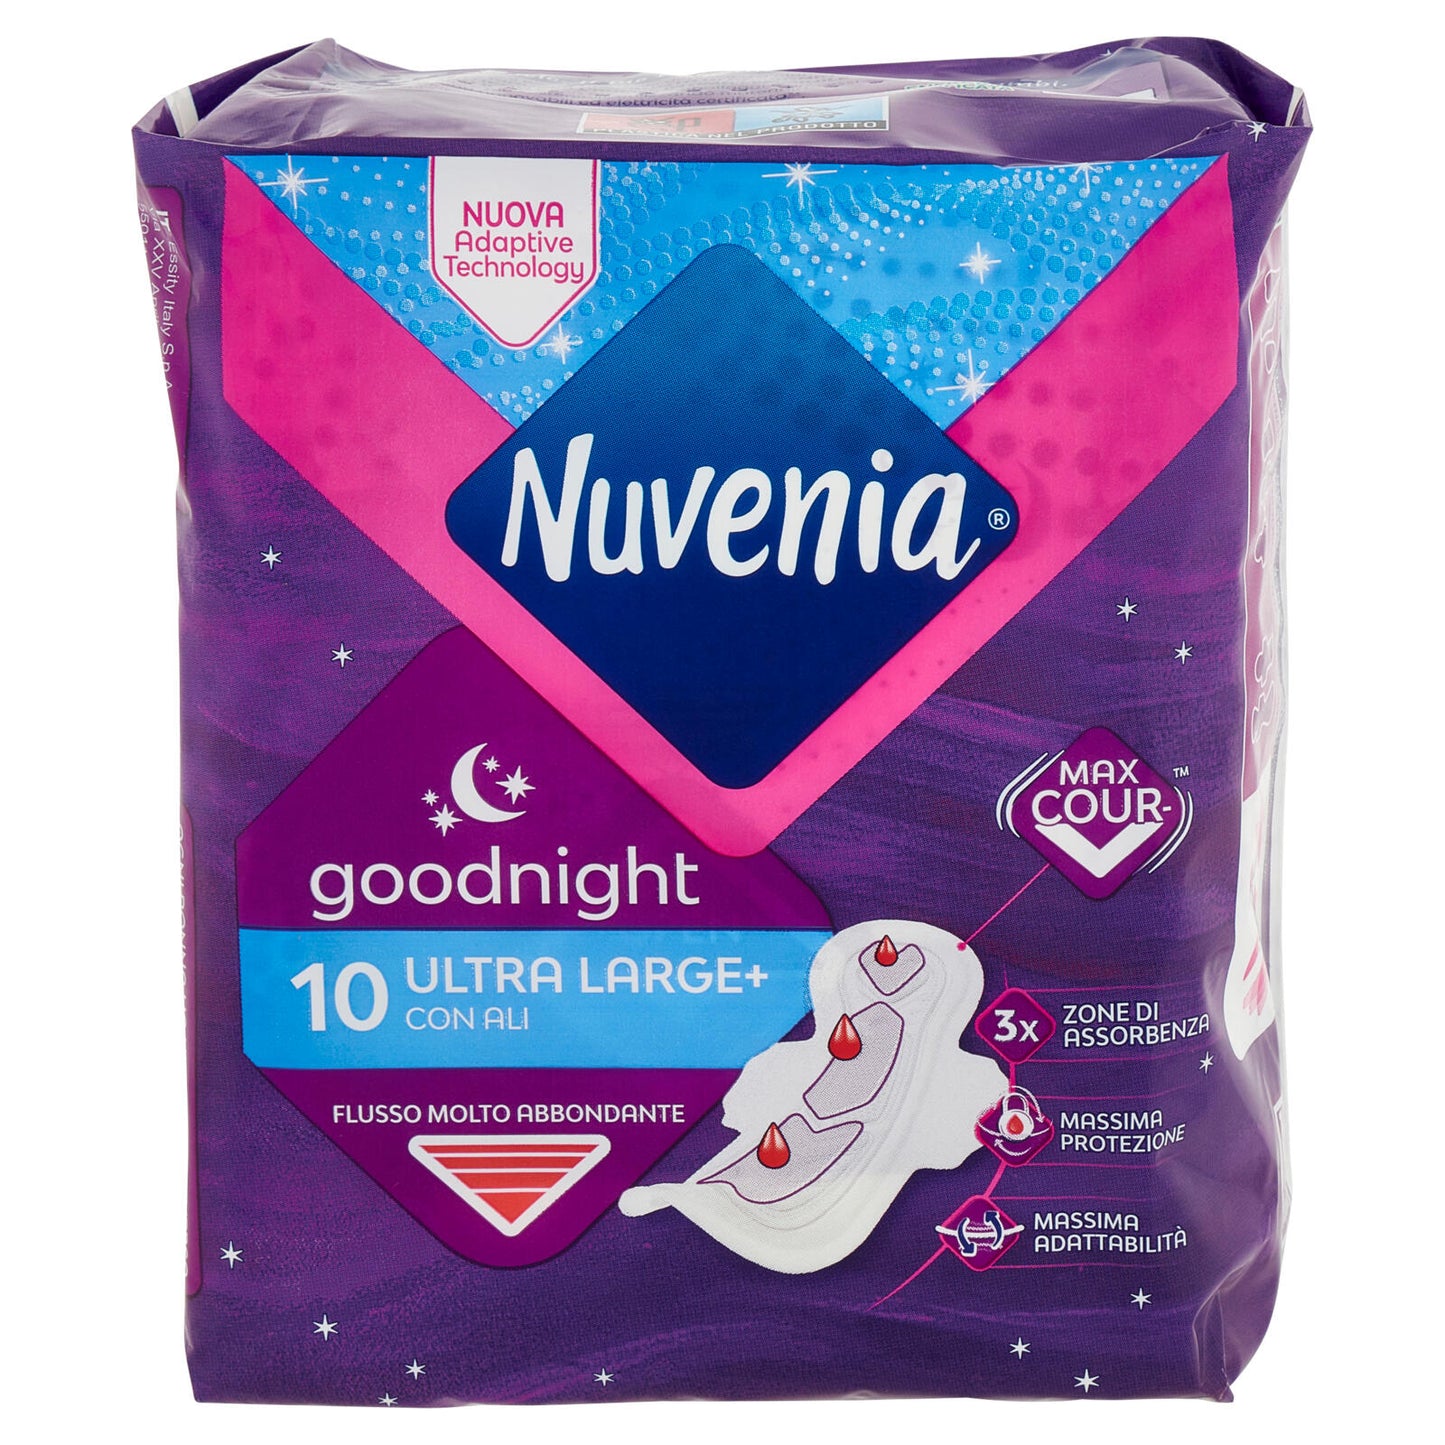 Nuvenia goodnight Ultra Large+ con Ali 10 pz